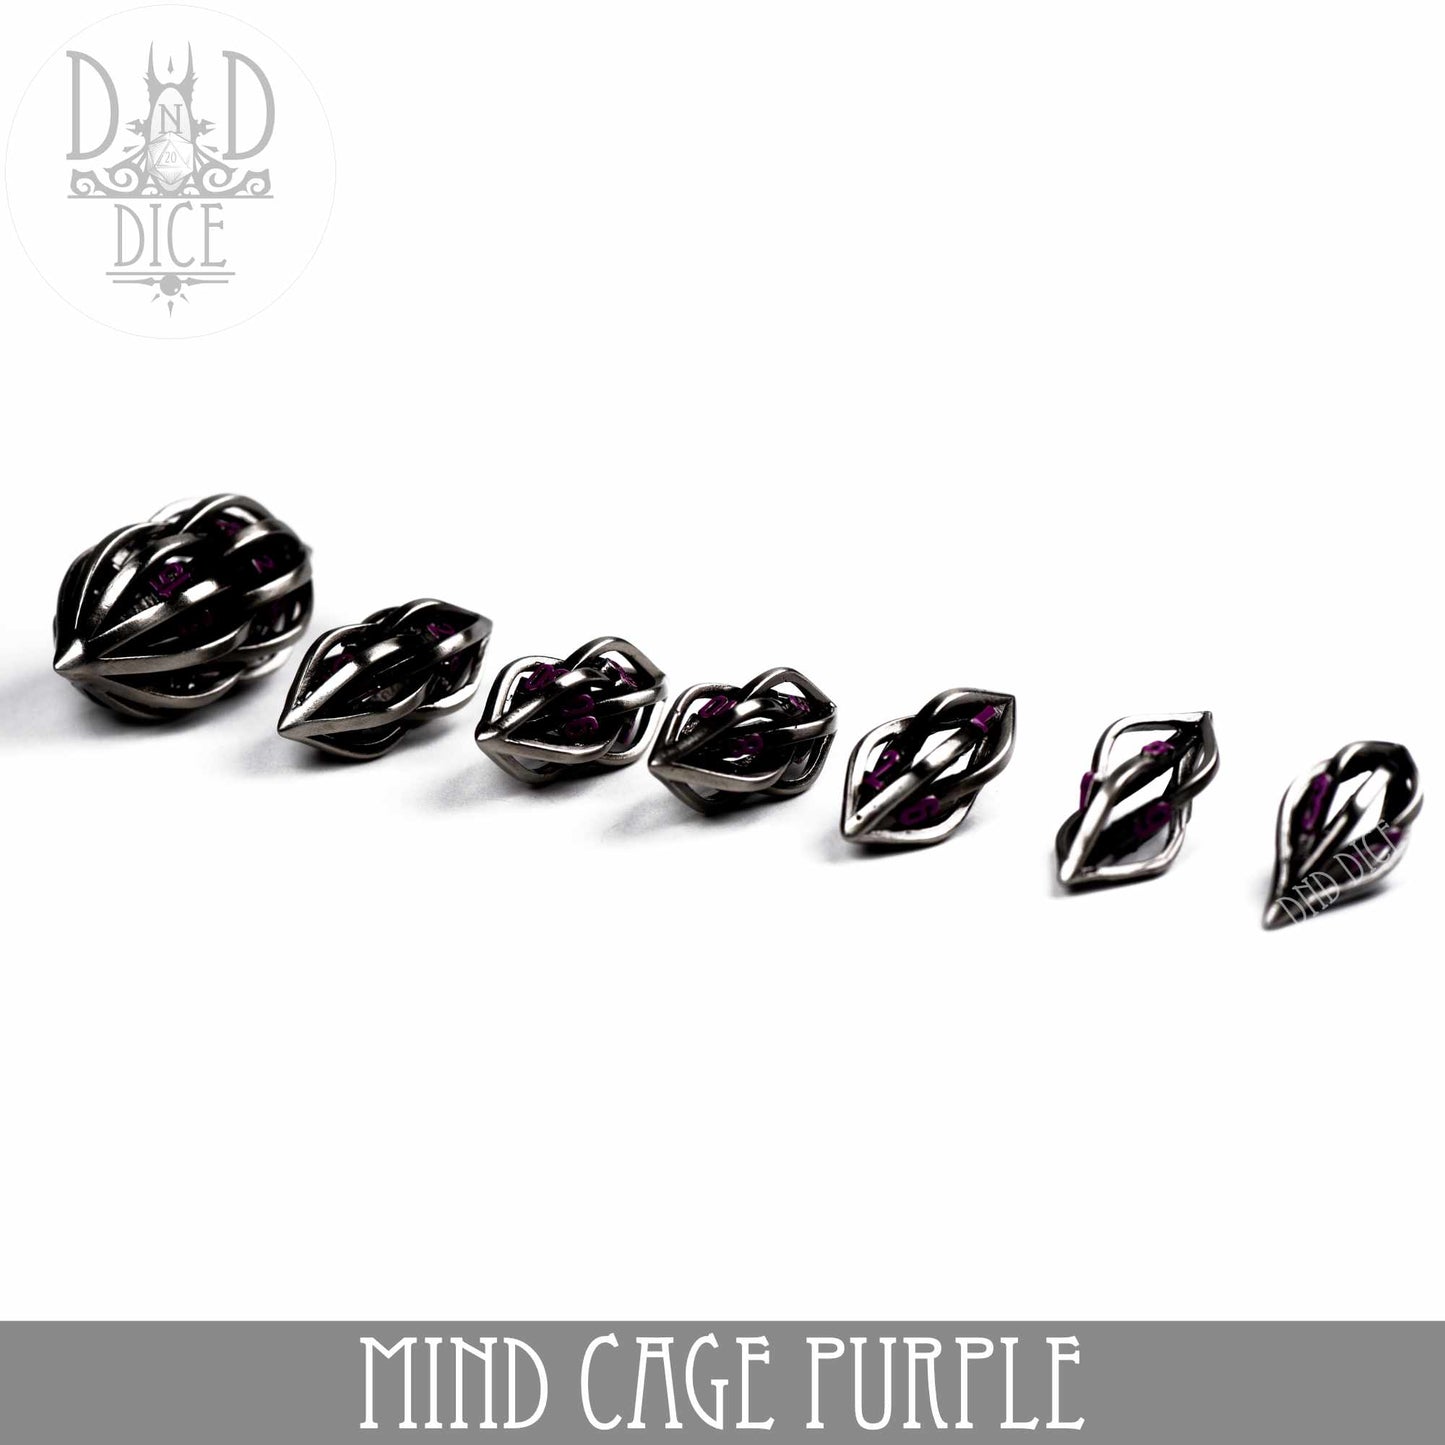 Mind Cage Purple - Juego de dados de metal (caja de regalo)